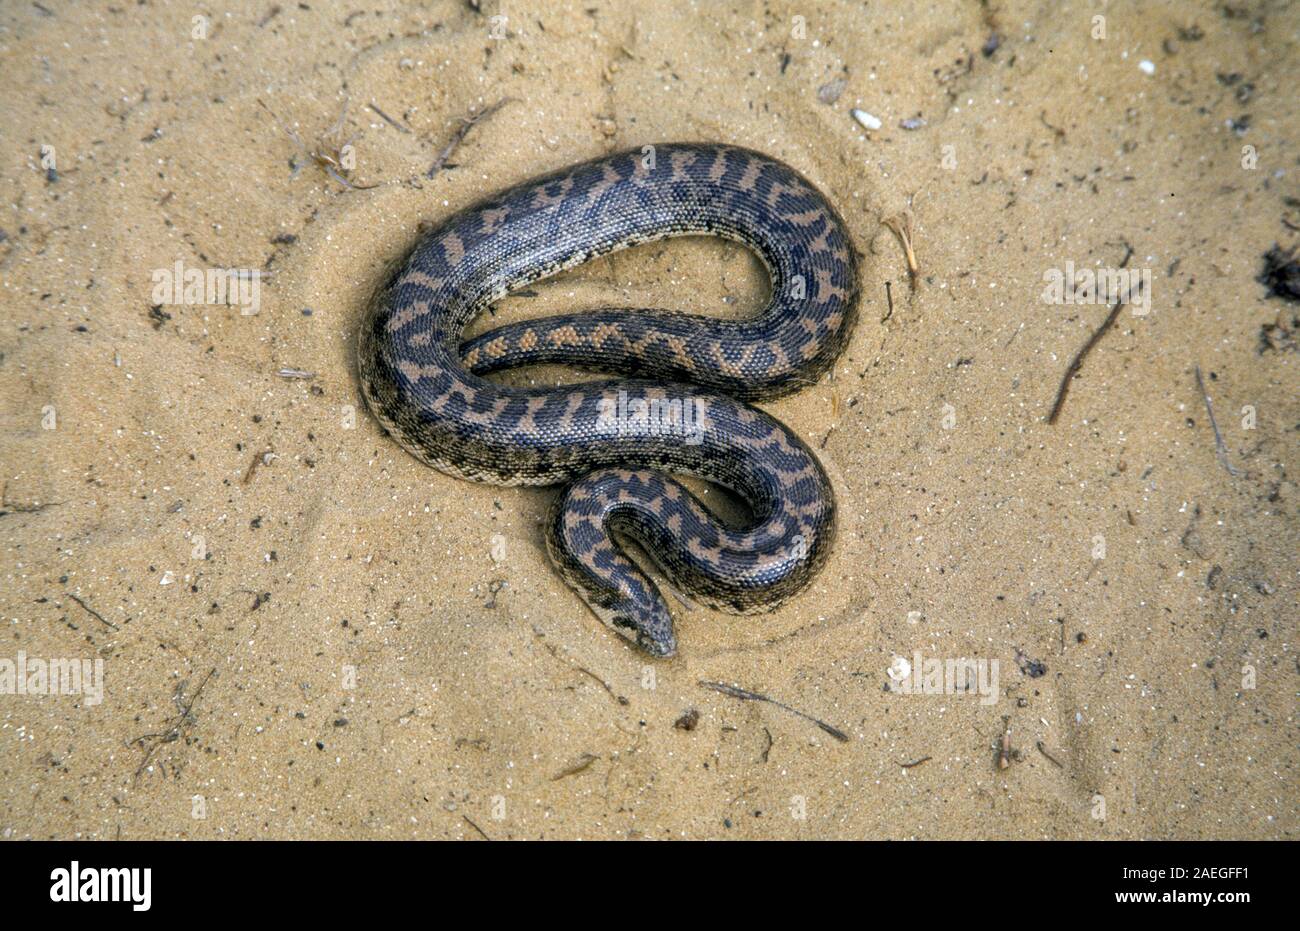 Sable (javelot boa Eryx jaculus) dans le sable. Ce serpent est trouvé en Europe orientale, le Caucase, le Moyen-Orient et l'Afrique. Photographié en Israël Banque D'Images